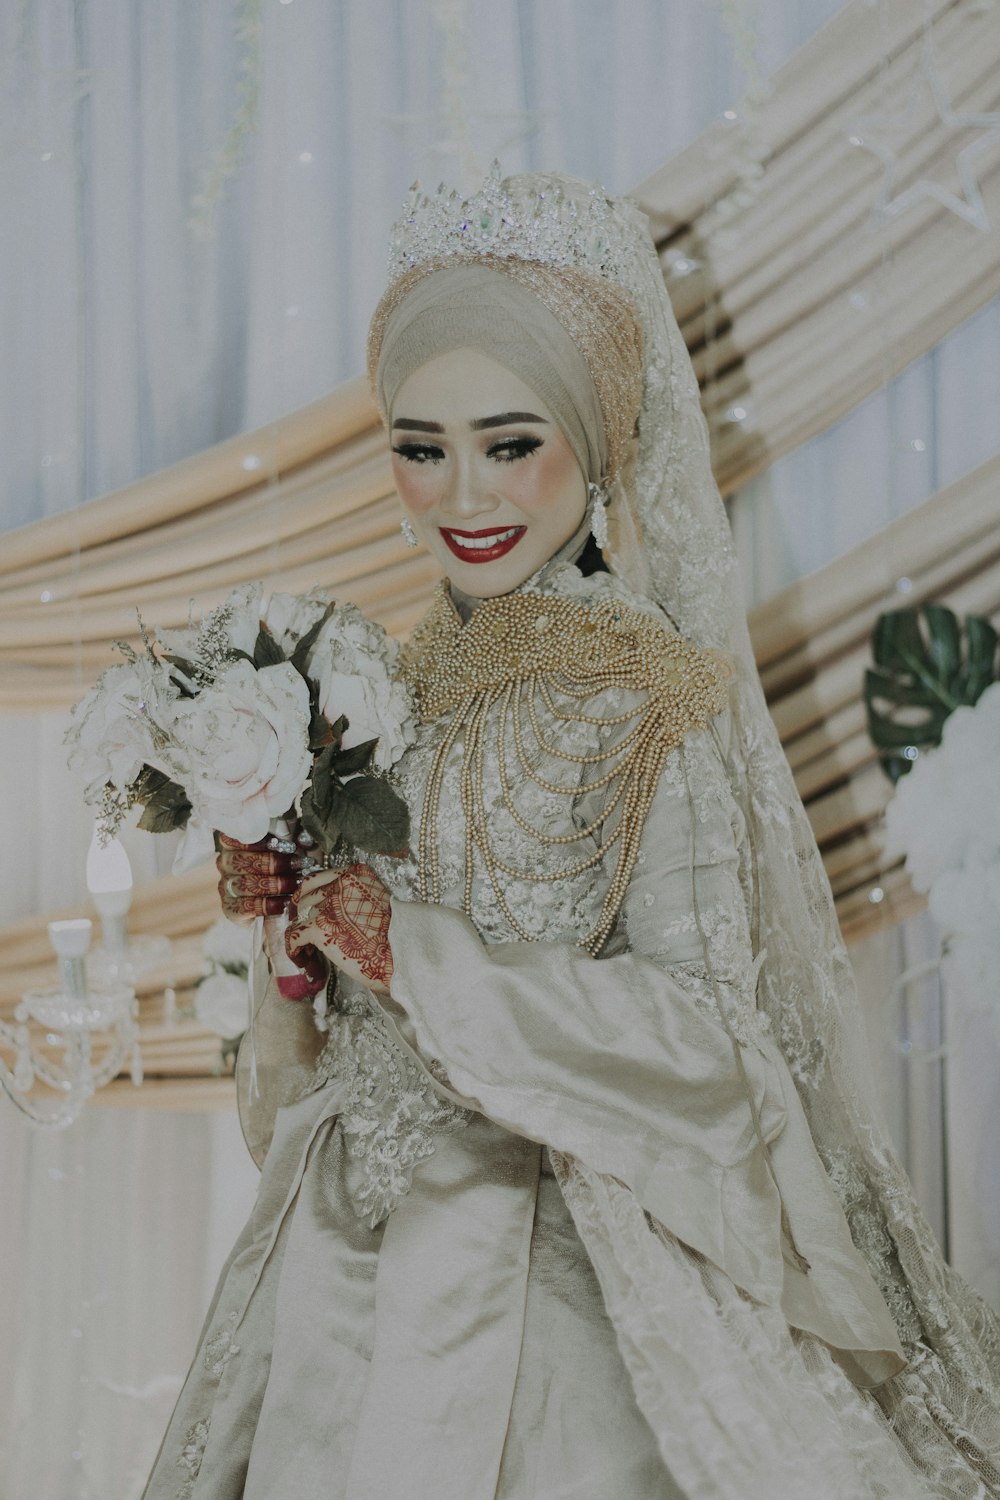 smiling woman wearing wedding dress